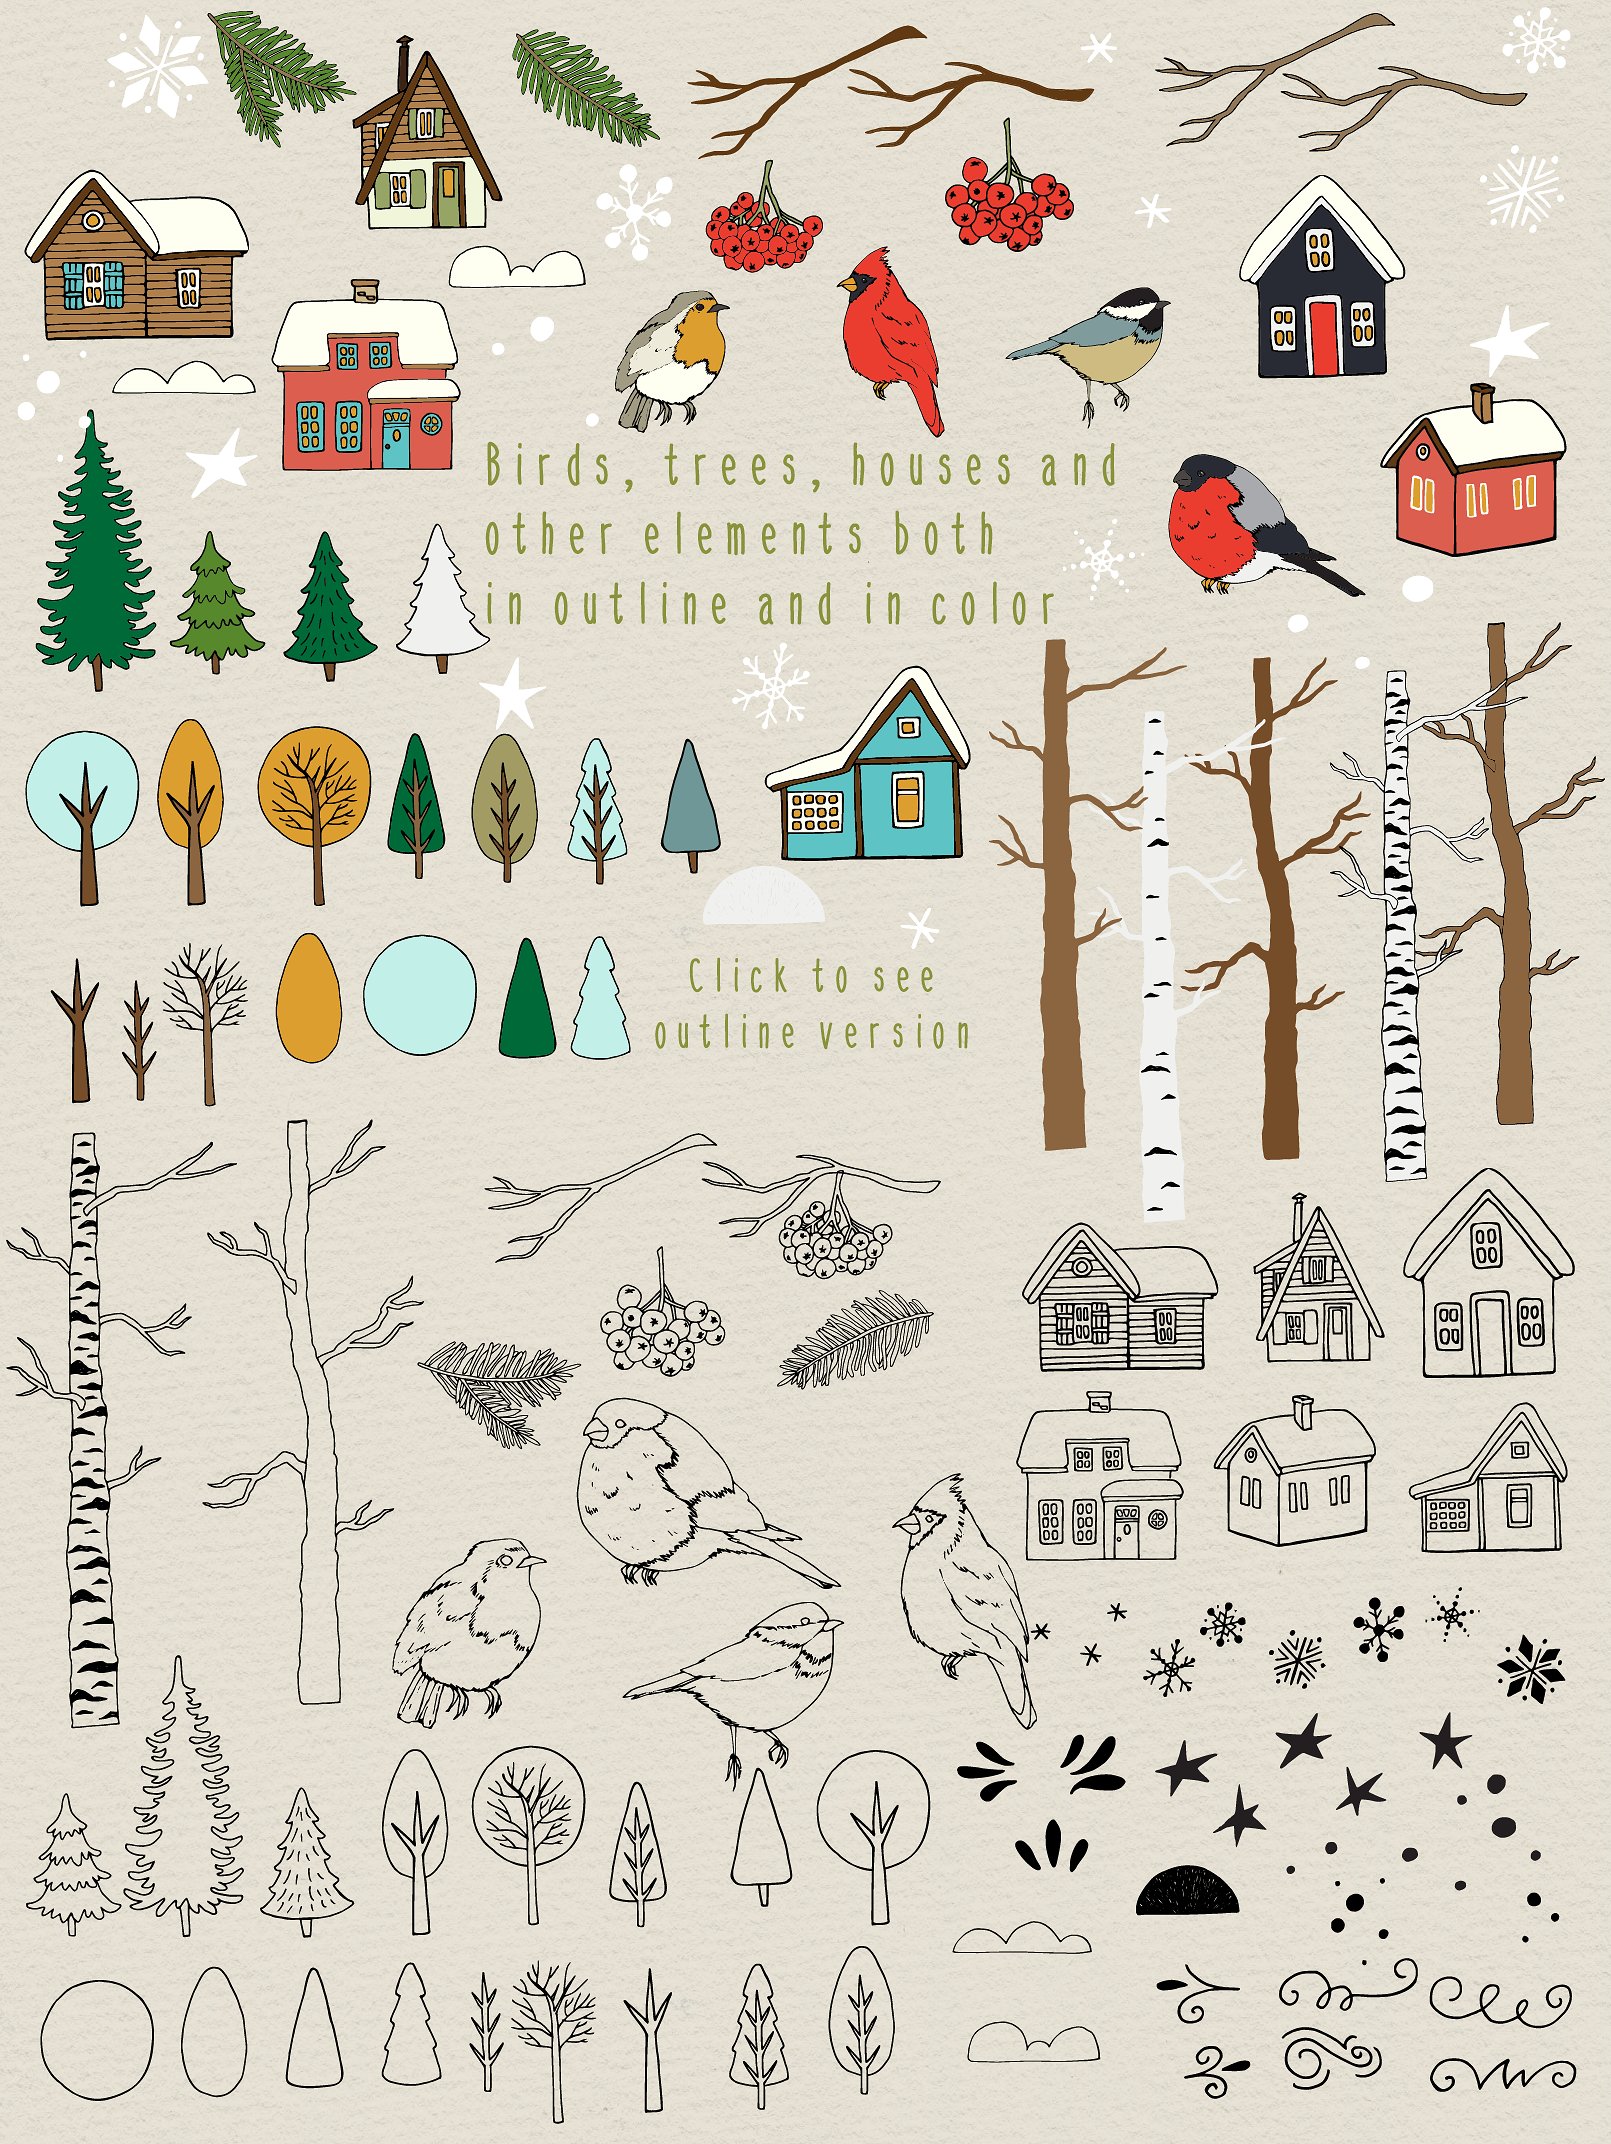 50个不同的手绘矢量剪贴画元素圣诞森林集合插图4